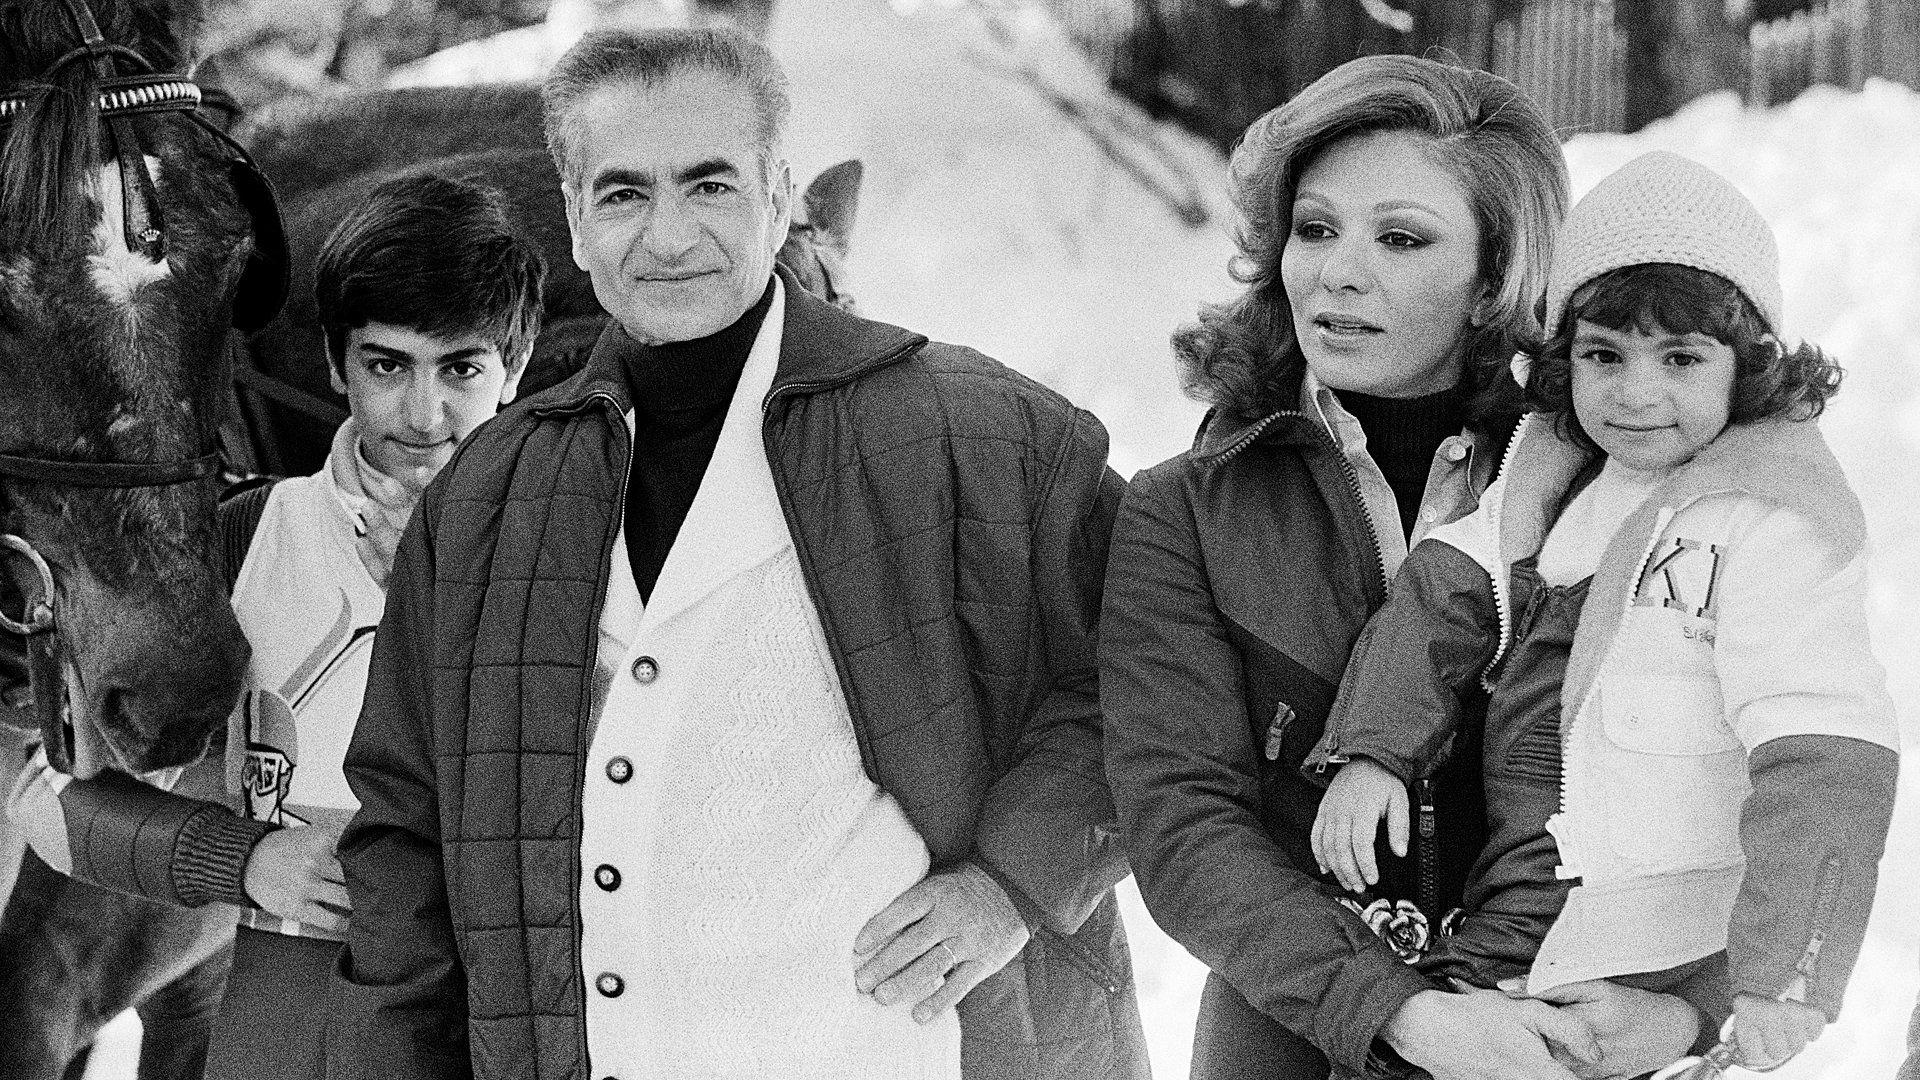 El sha y su familia en unas vacaciones de invierno en los años 70.